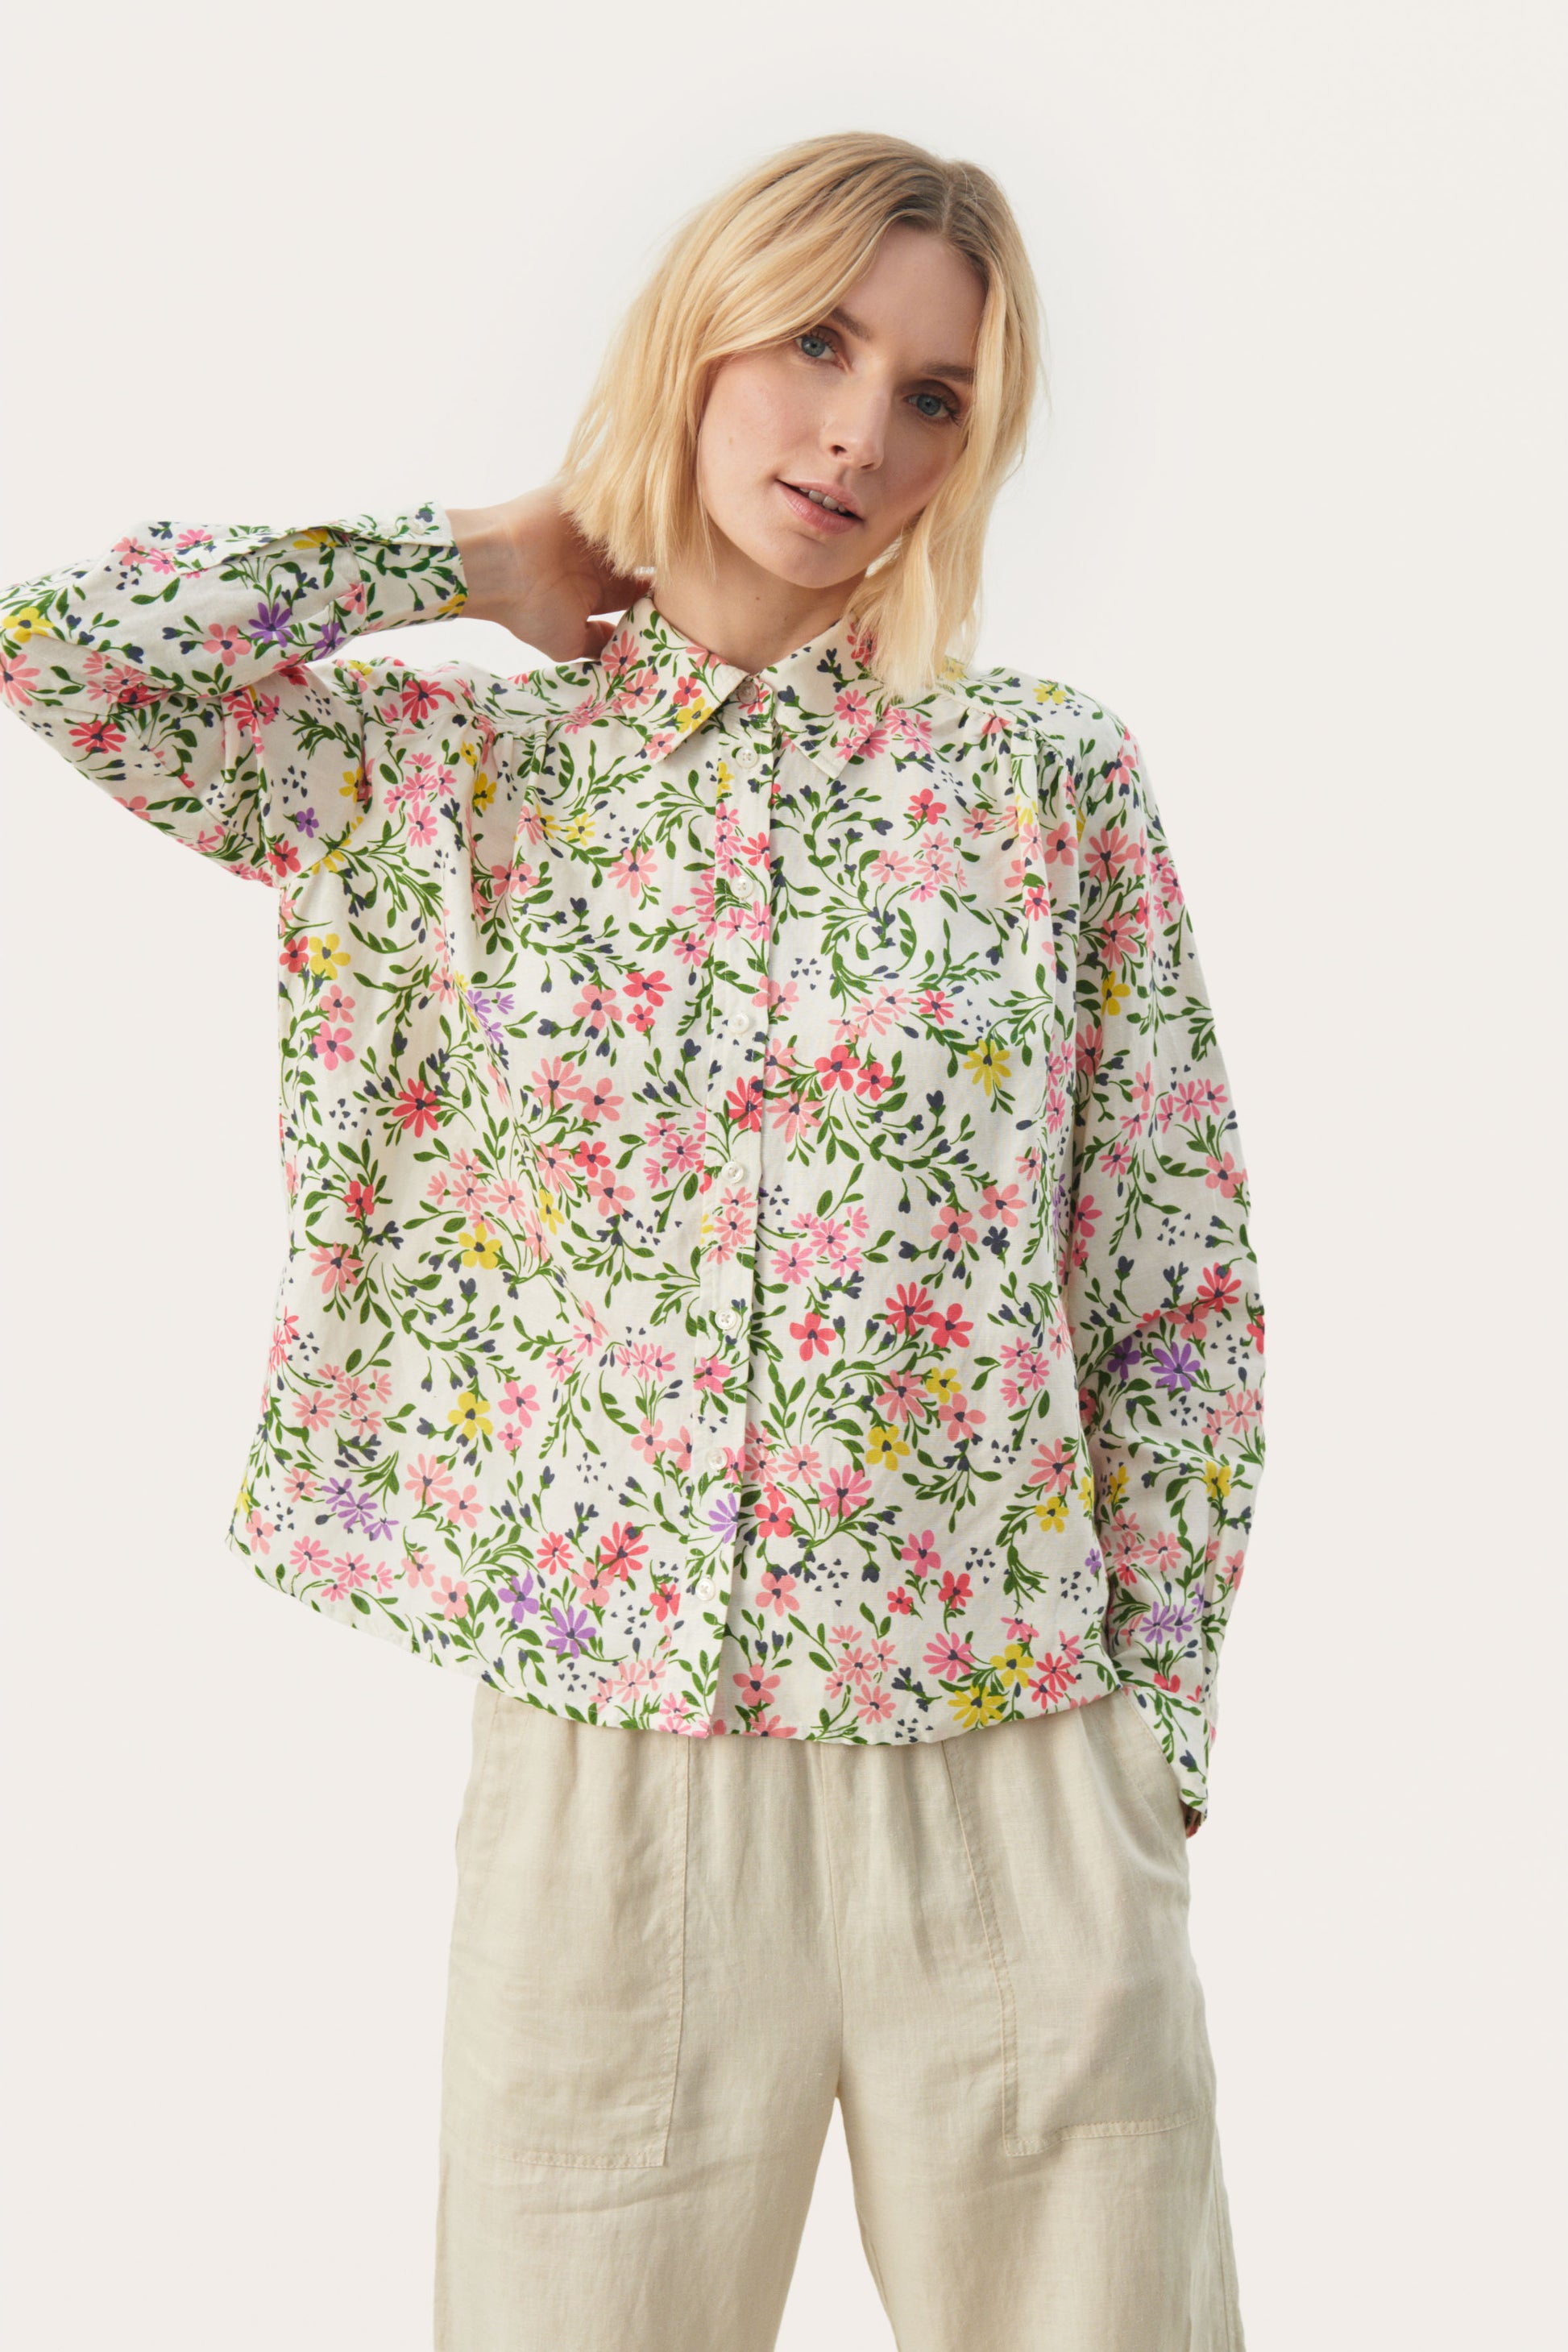 Flower print long shirt for girls